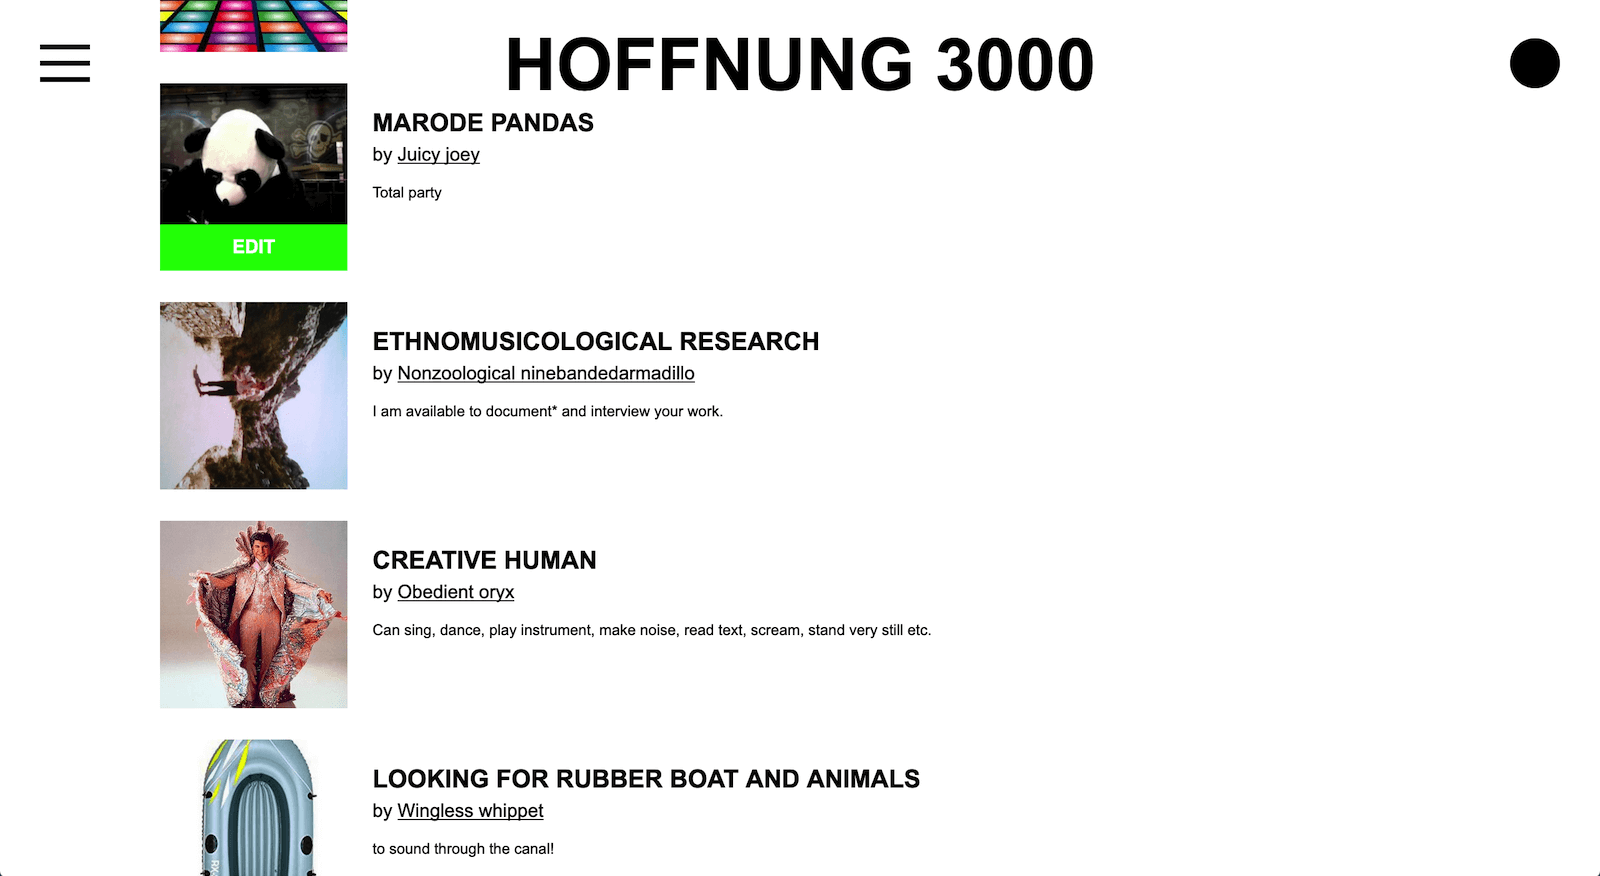 HOFFNUNG 3000 Resources list